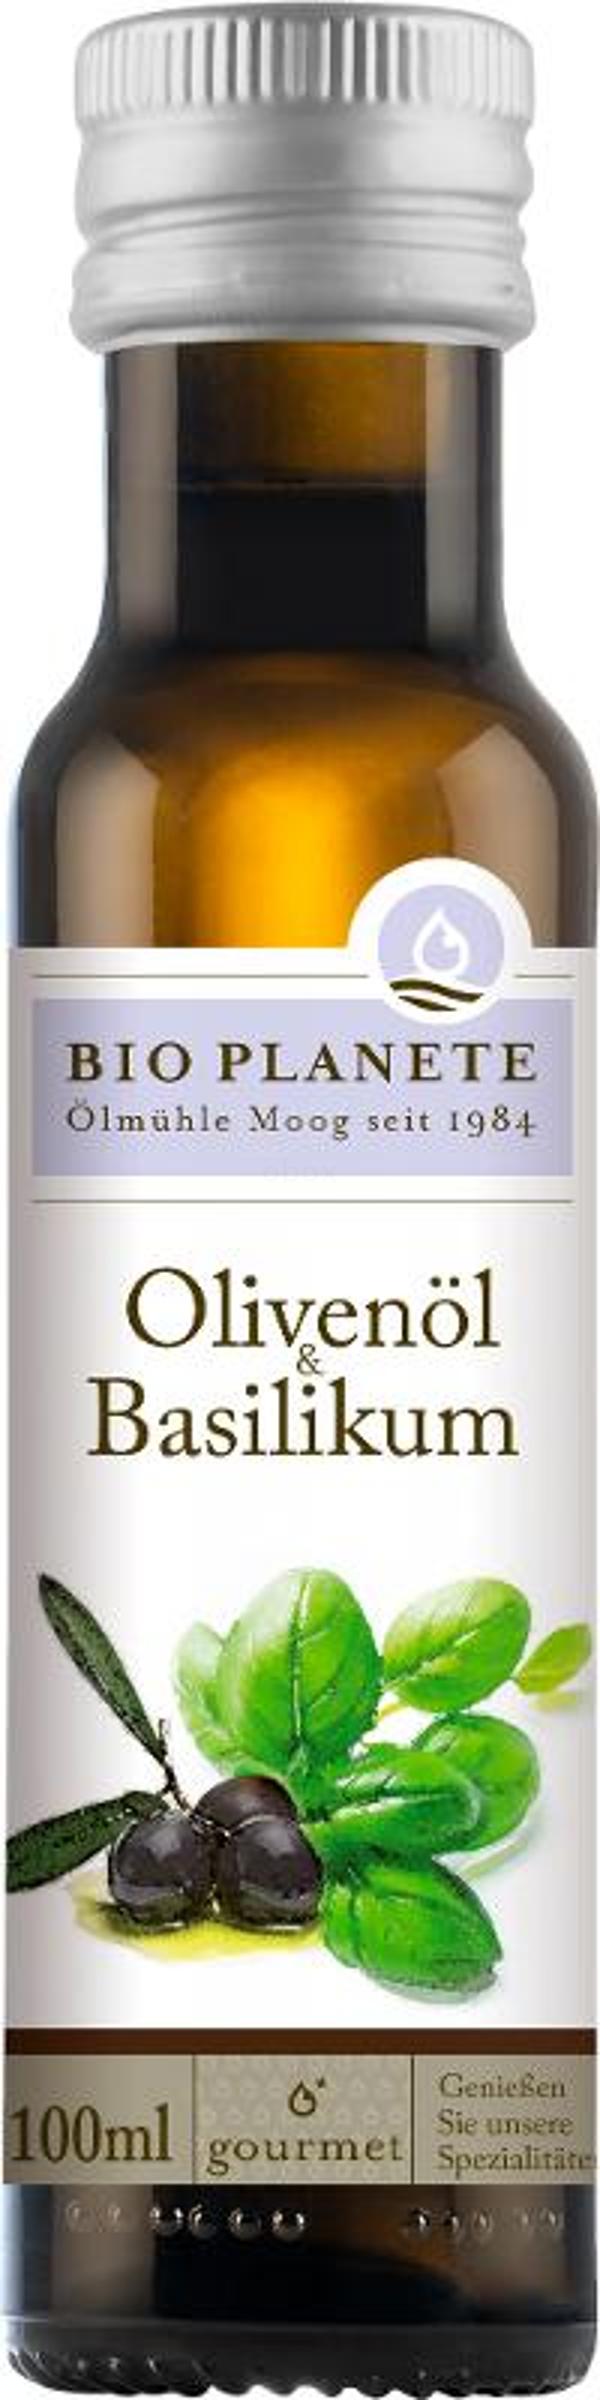 Produktfoto zu Olivenöl mit Basilikum